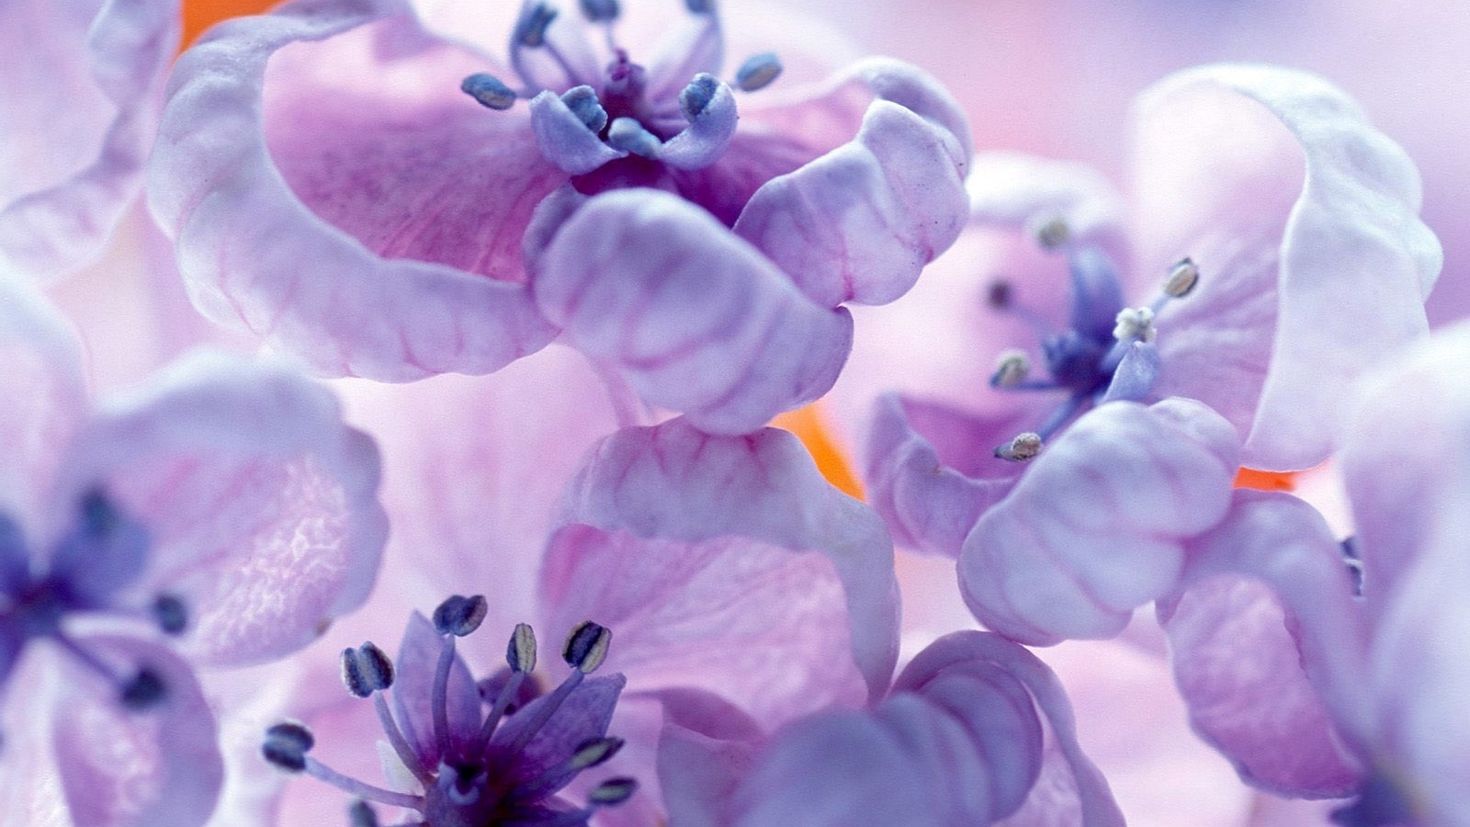 Обои на айфон март. Фиолетовые цветы. Сиреневые цветы. Фиолетовый цвет. Нежный цветок.